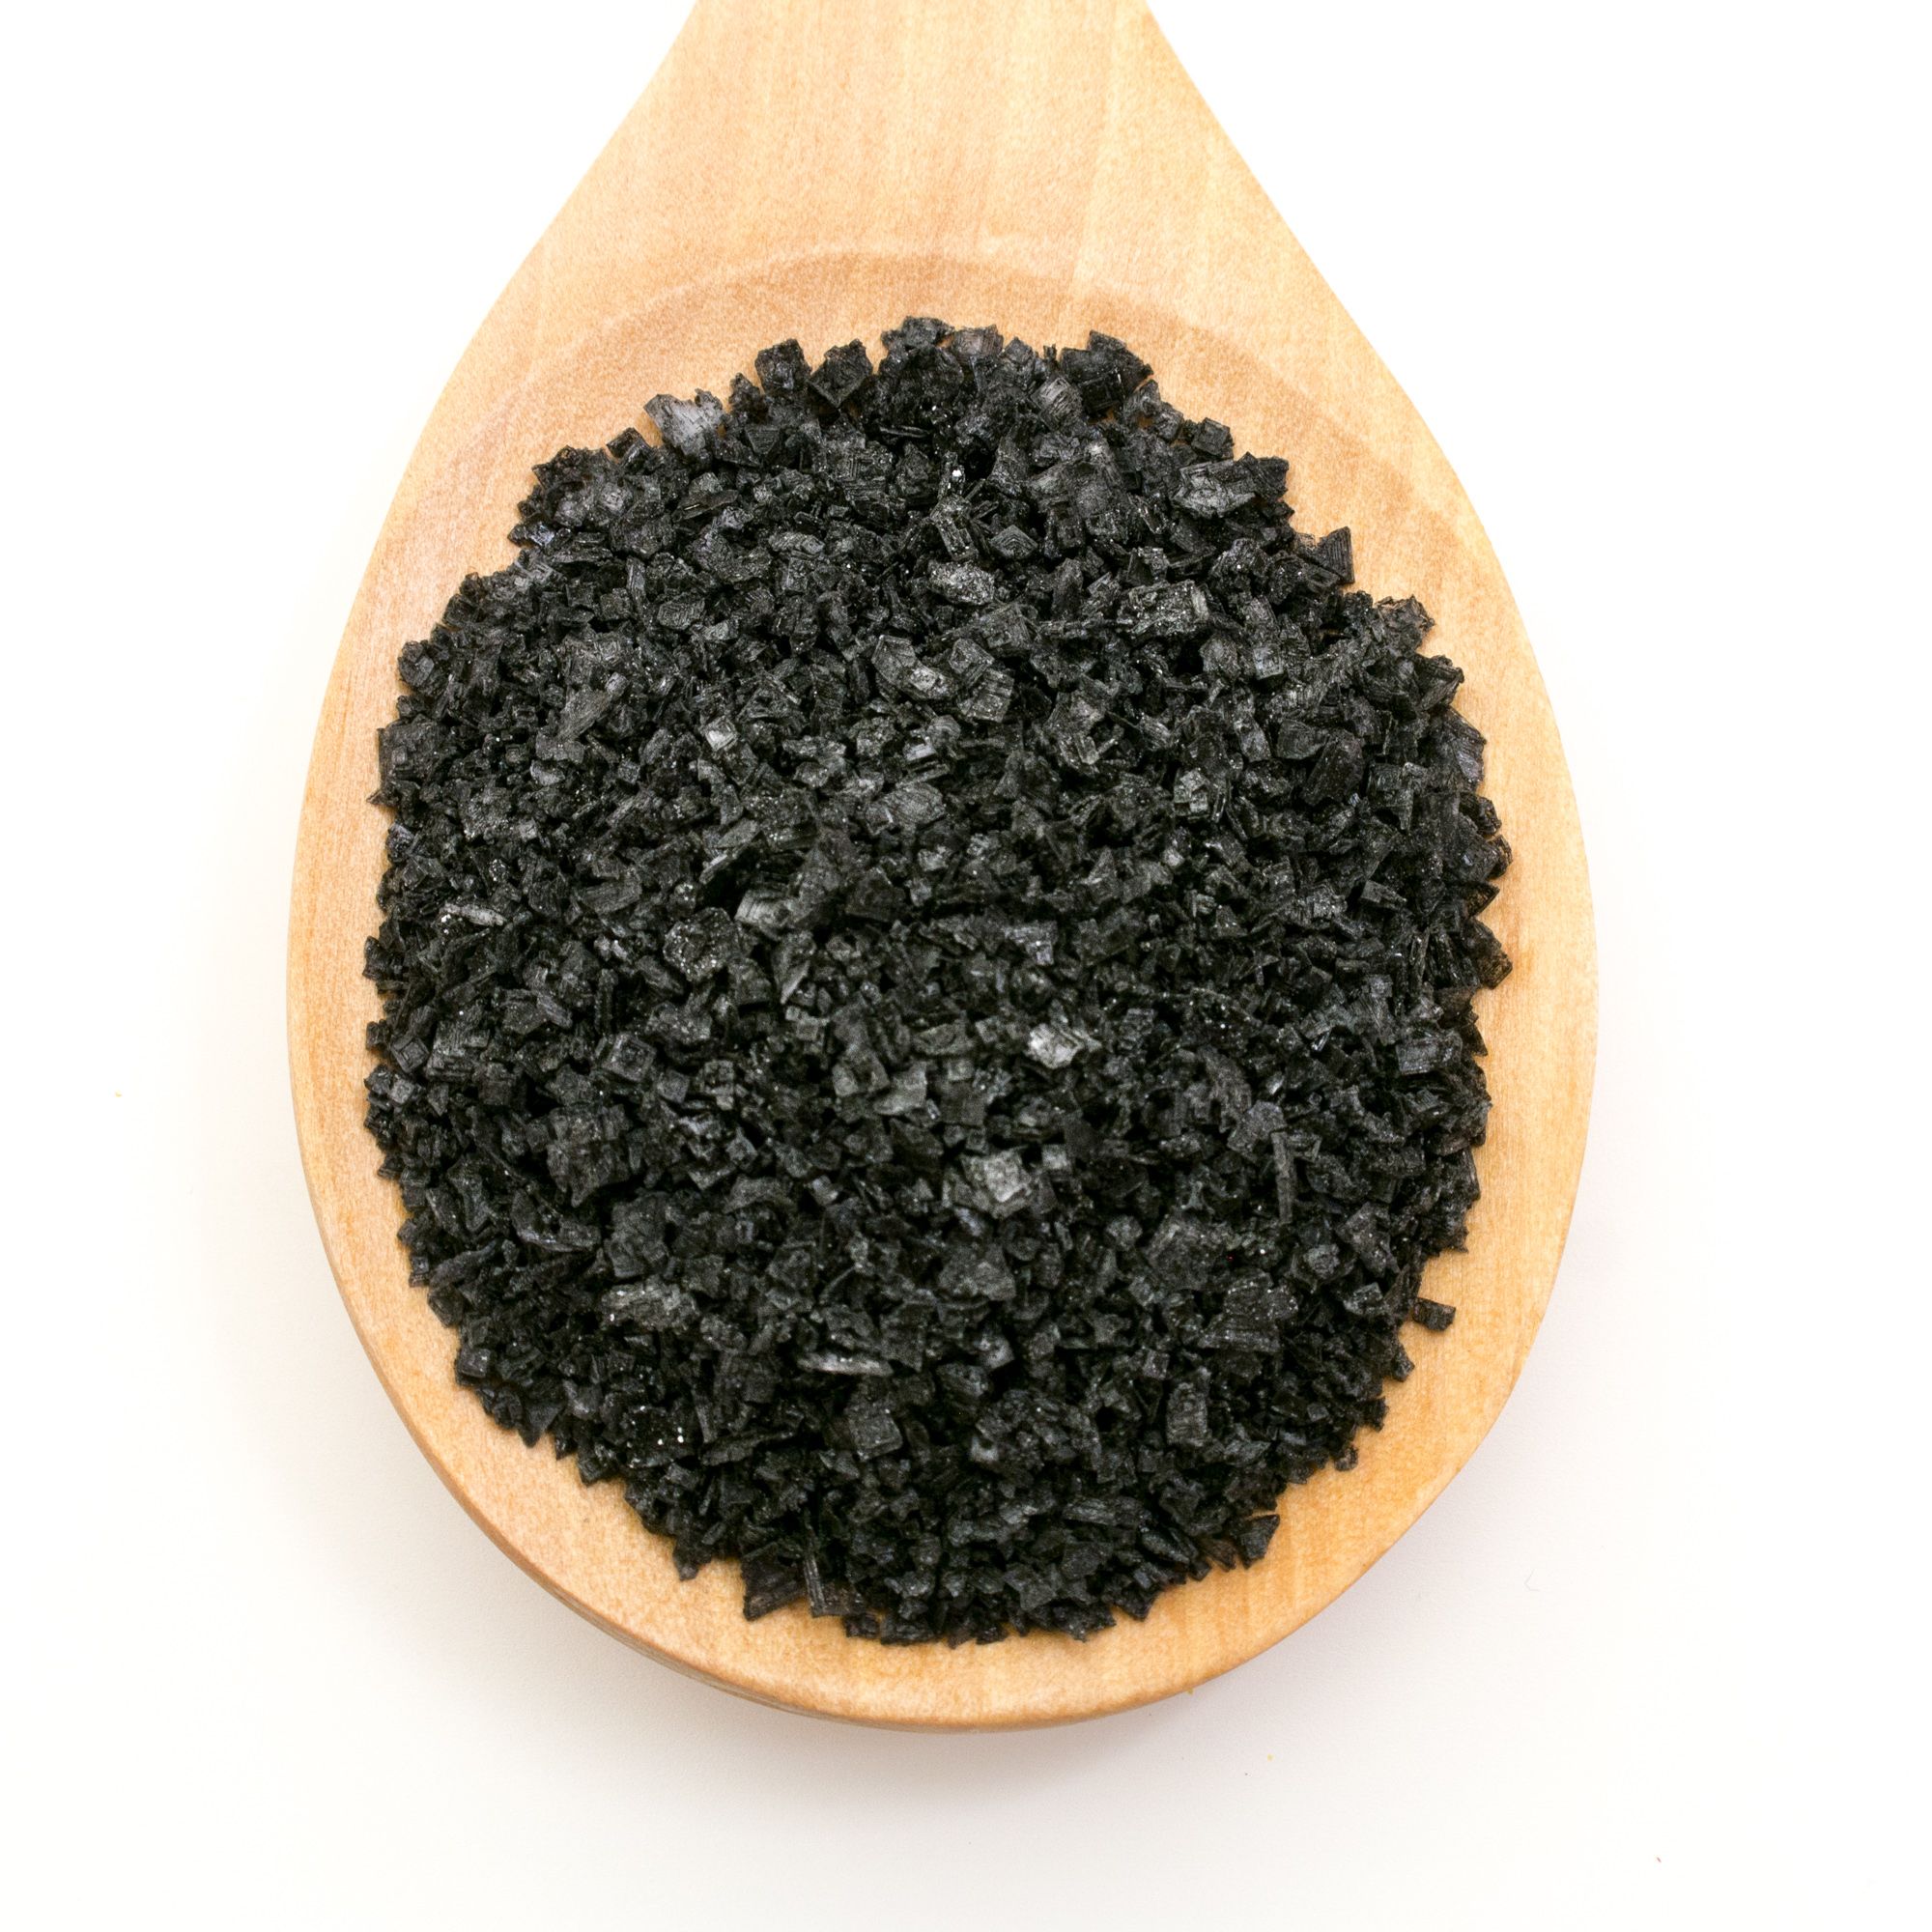 Escamas de sal negra, un elemento decorativo para nuestros platos